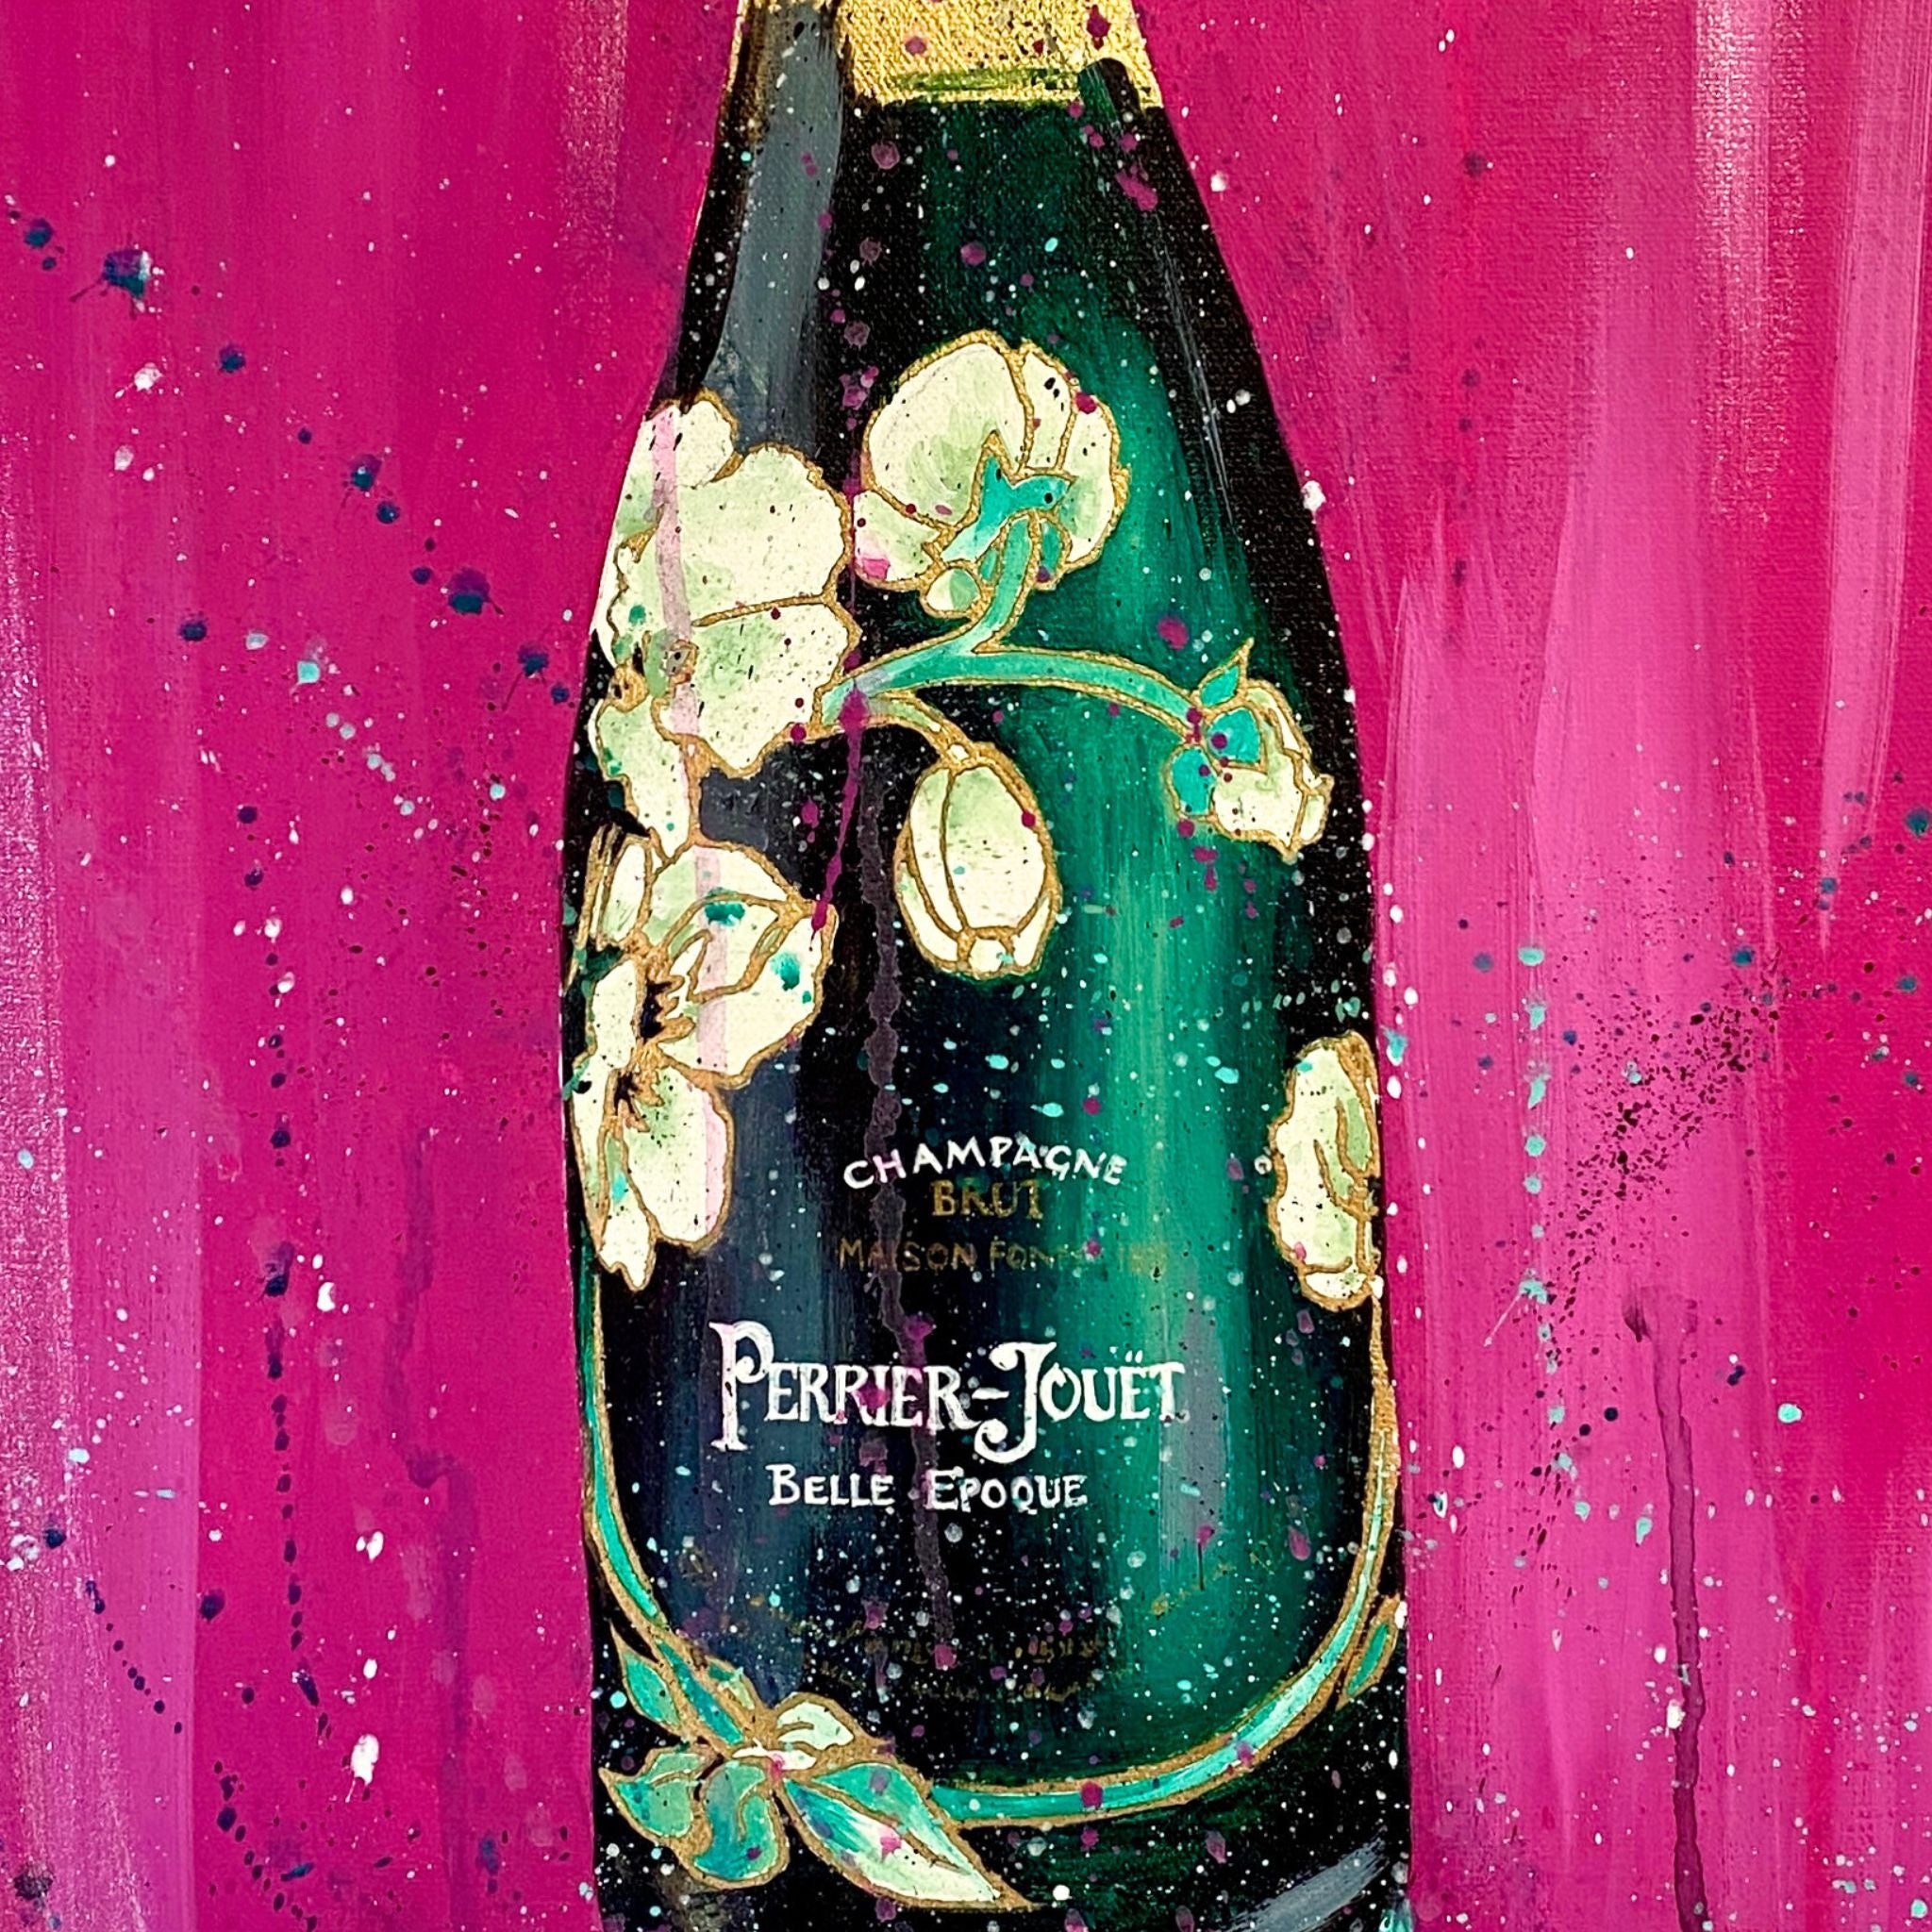 Champagne Bottle Art - Perrier Jouet on Pink